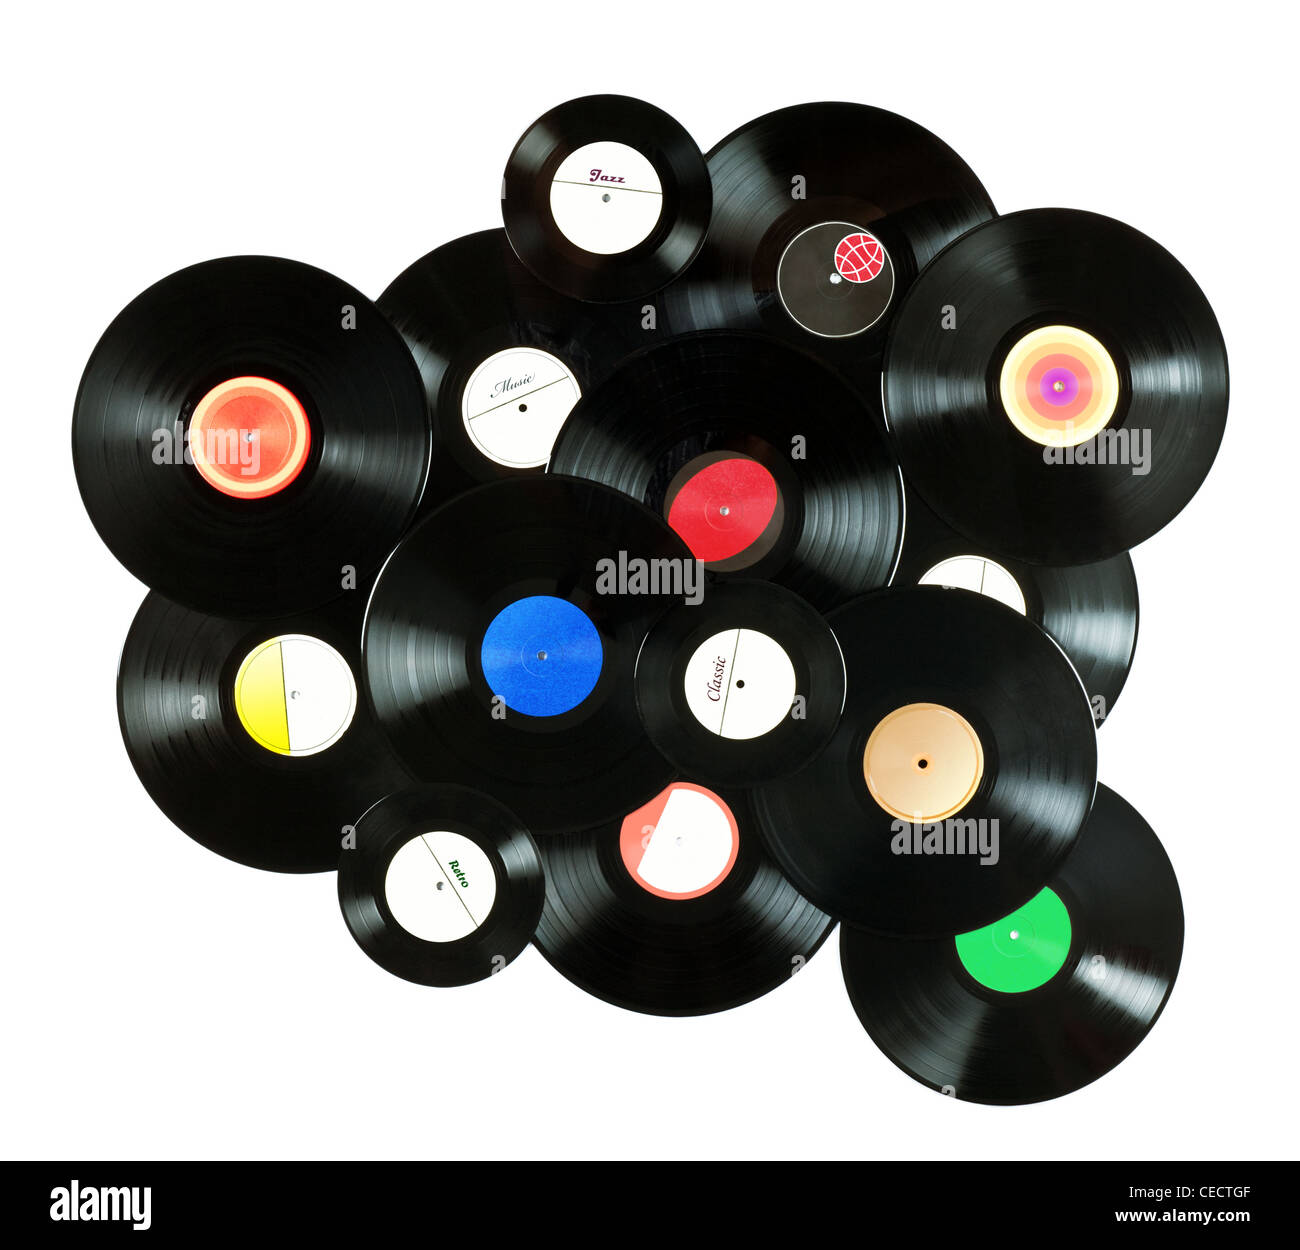 Abstract la musica di sfondo colorato realizzato in vinile Vintage records, isolato su sfondo bianco, tutte le etichette progettato da me stesso Foto Stock